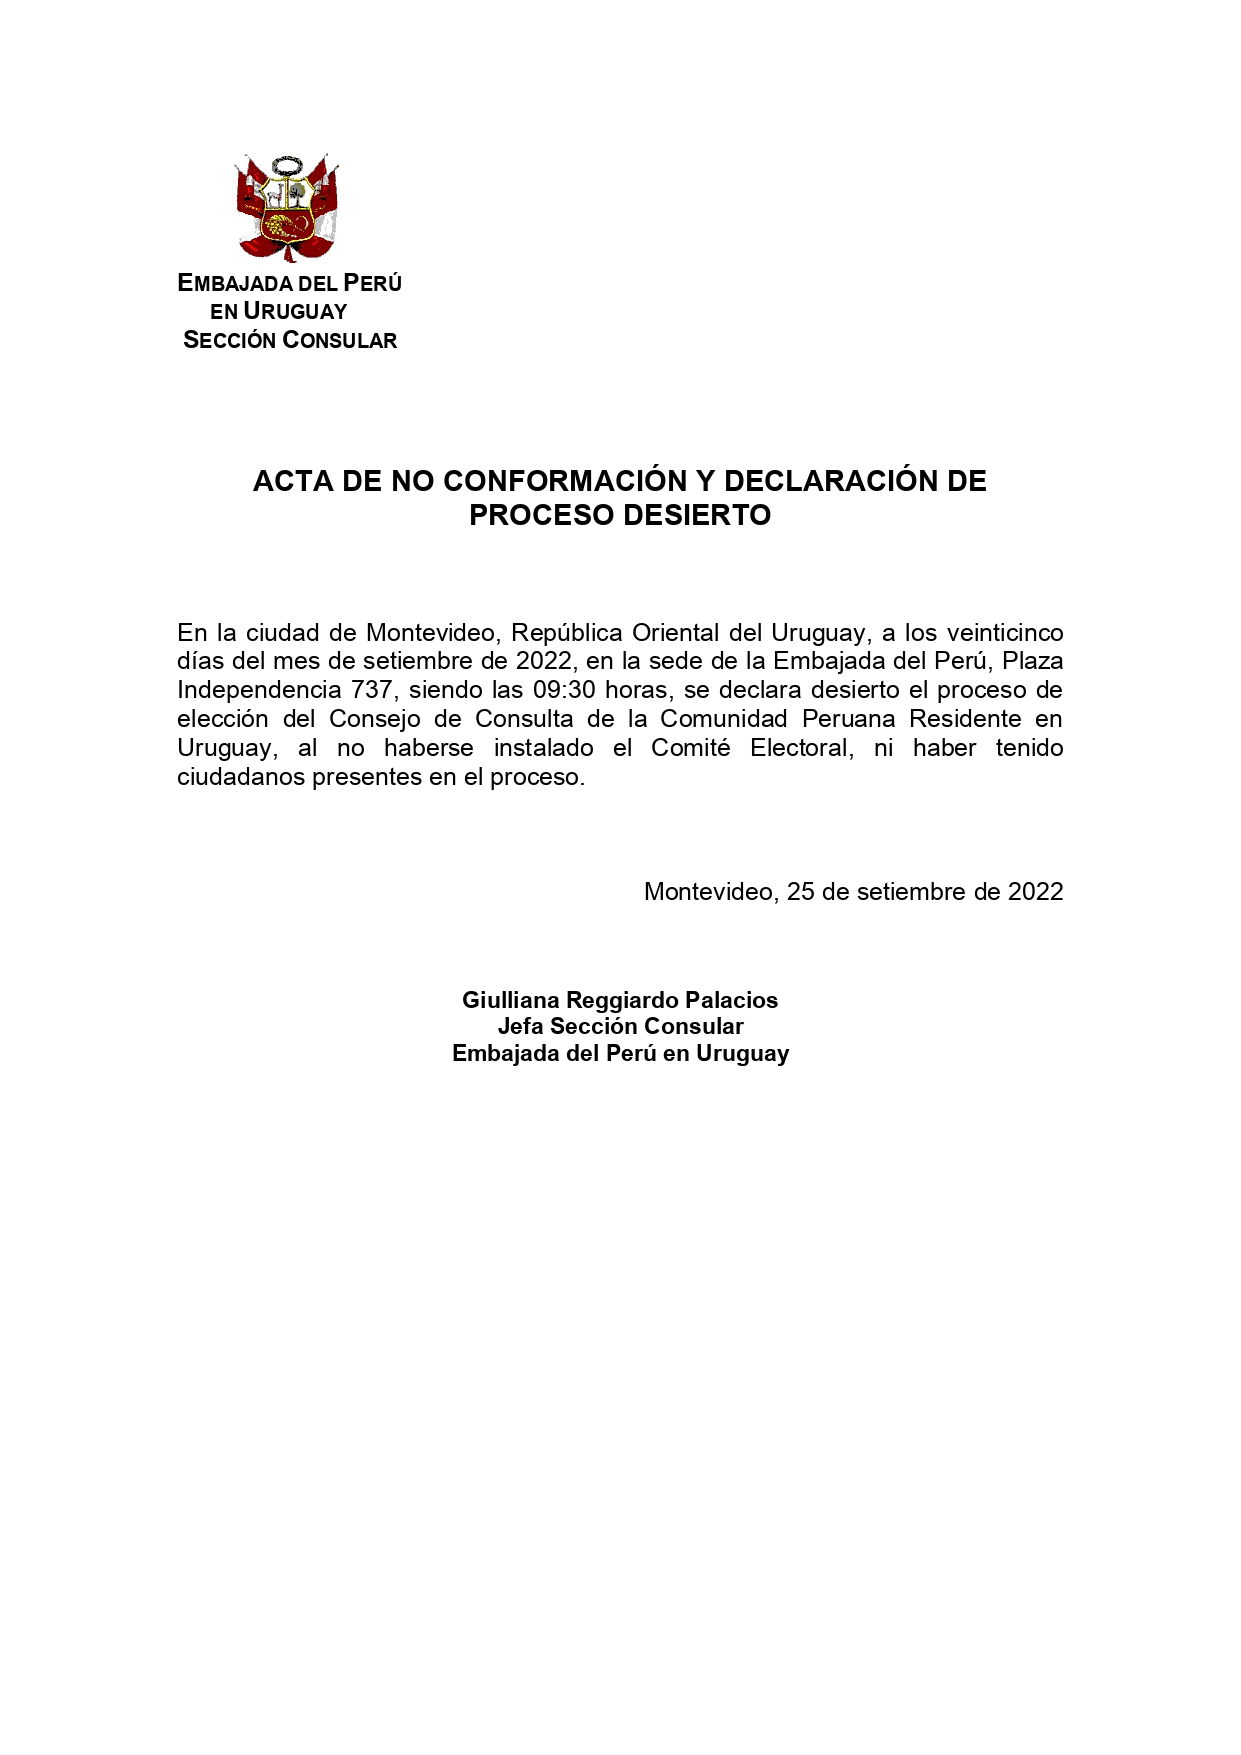 ACTA NO CONFORMACION CONSEJO DE CONSULTA 2022 web_page-0001.jpg